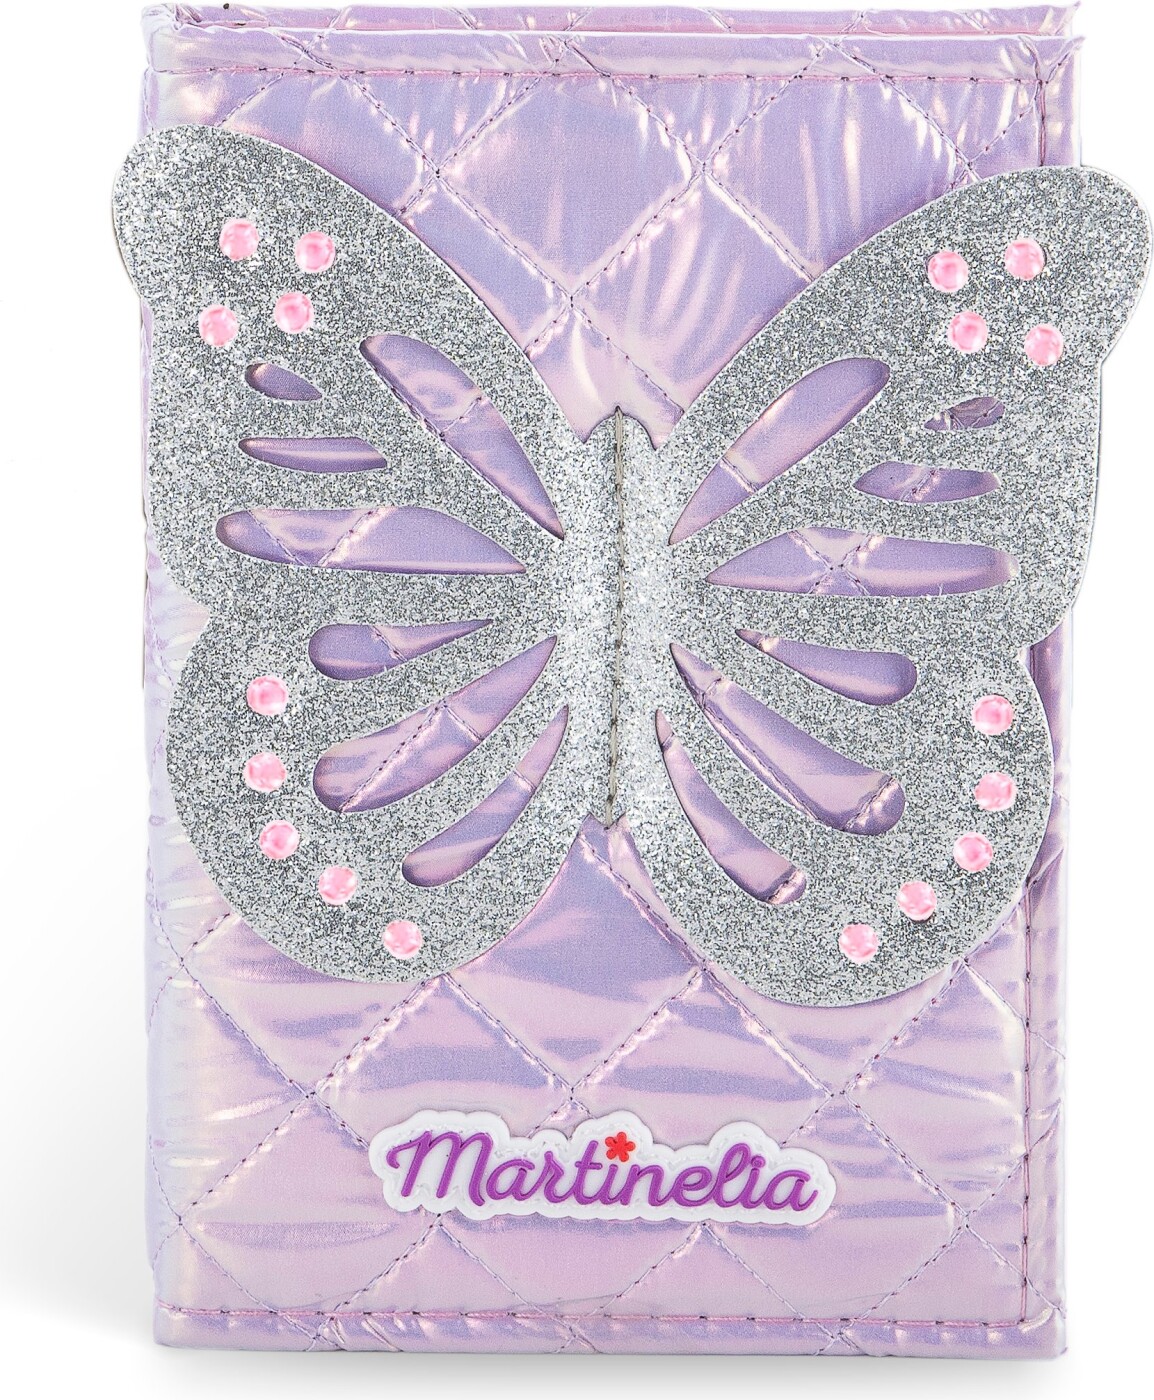 Martinelia - Shimmer Wings - Makeup Sæt Til Børn